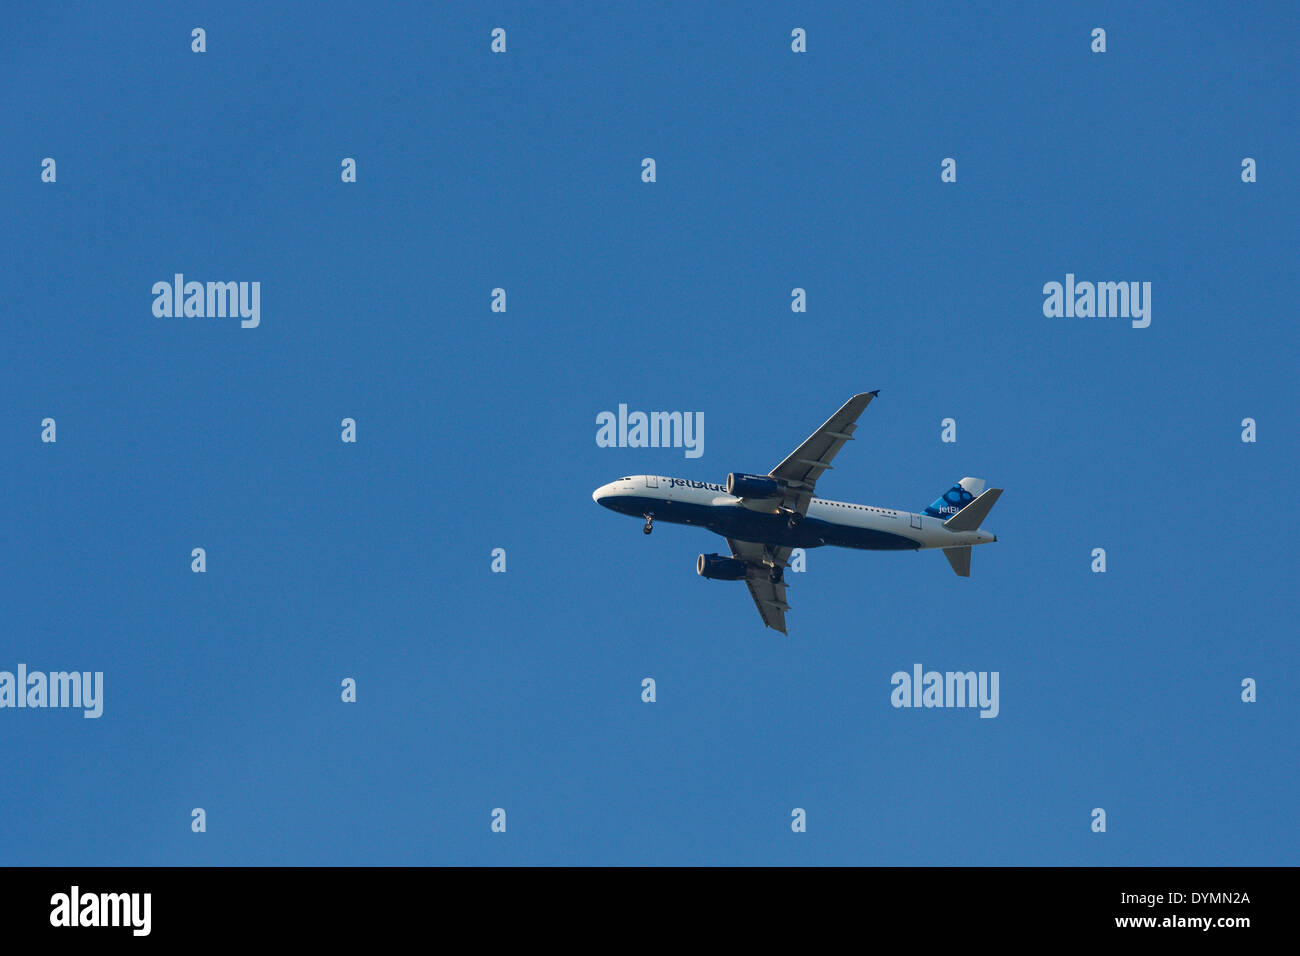 Blue jet avion de passagers avec les roues vers le bas pour l'atterrissage contre clair ciel bleu profond Banque D'Images